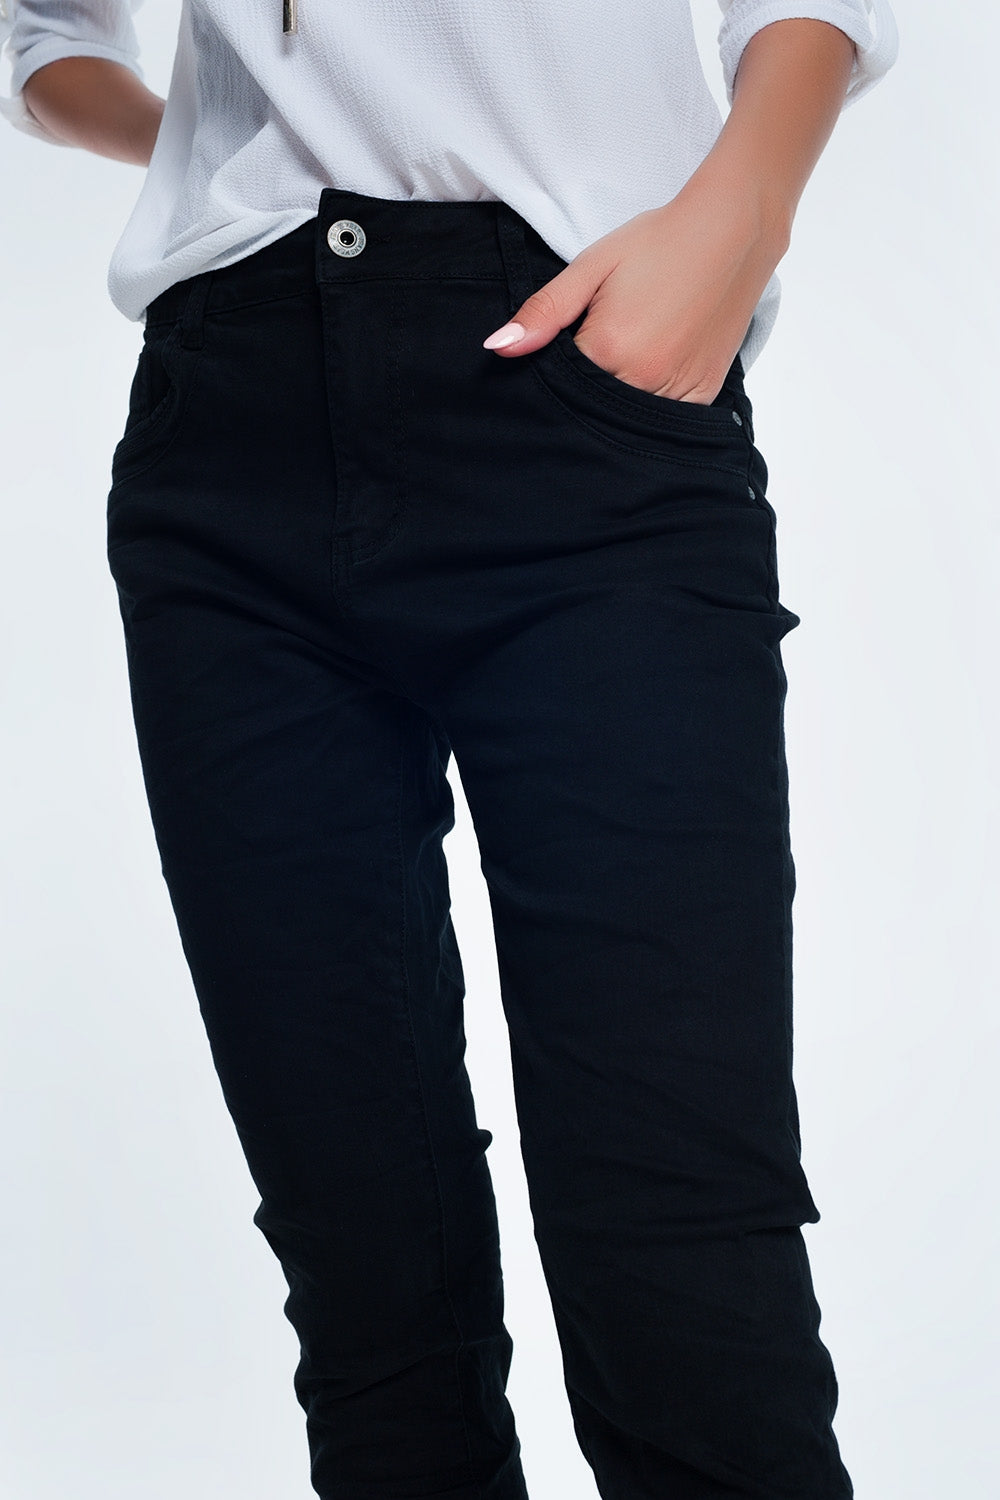 Drop crotch skinny jean in blackJeans